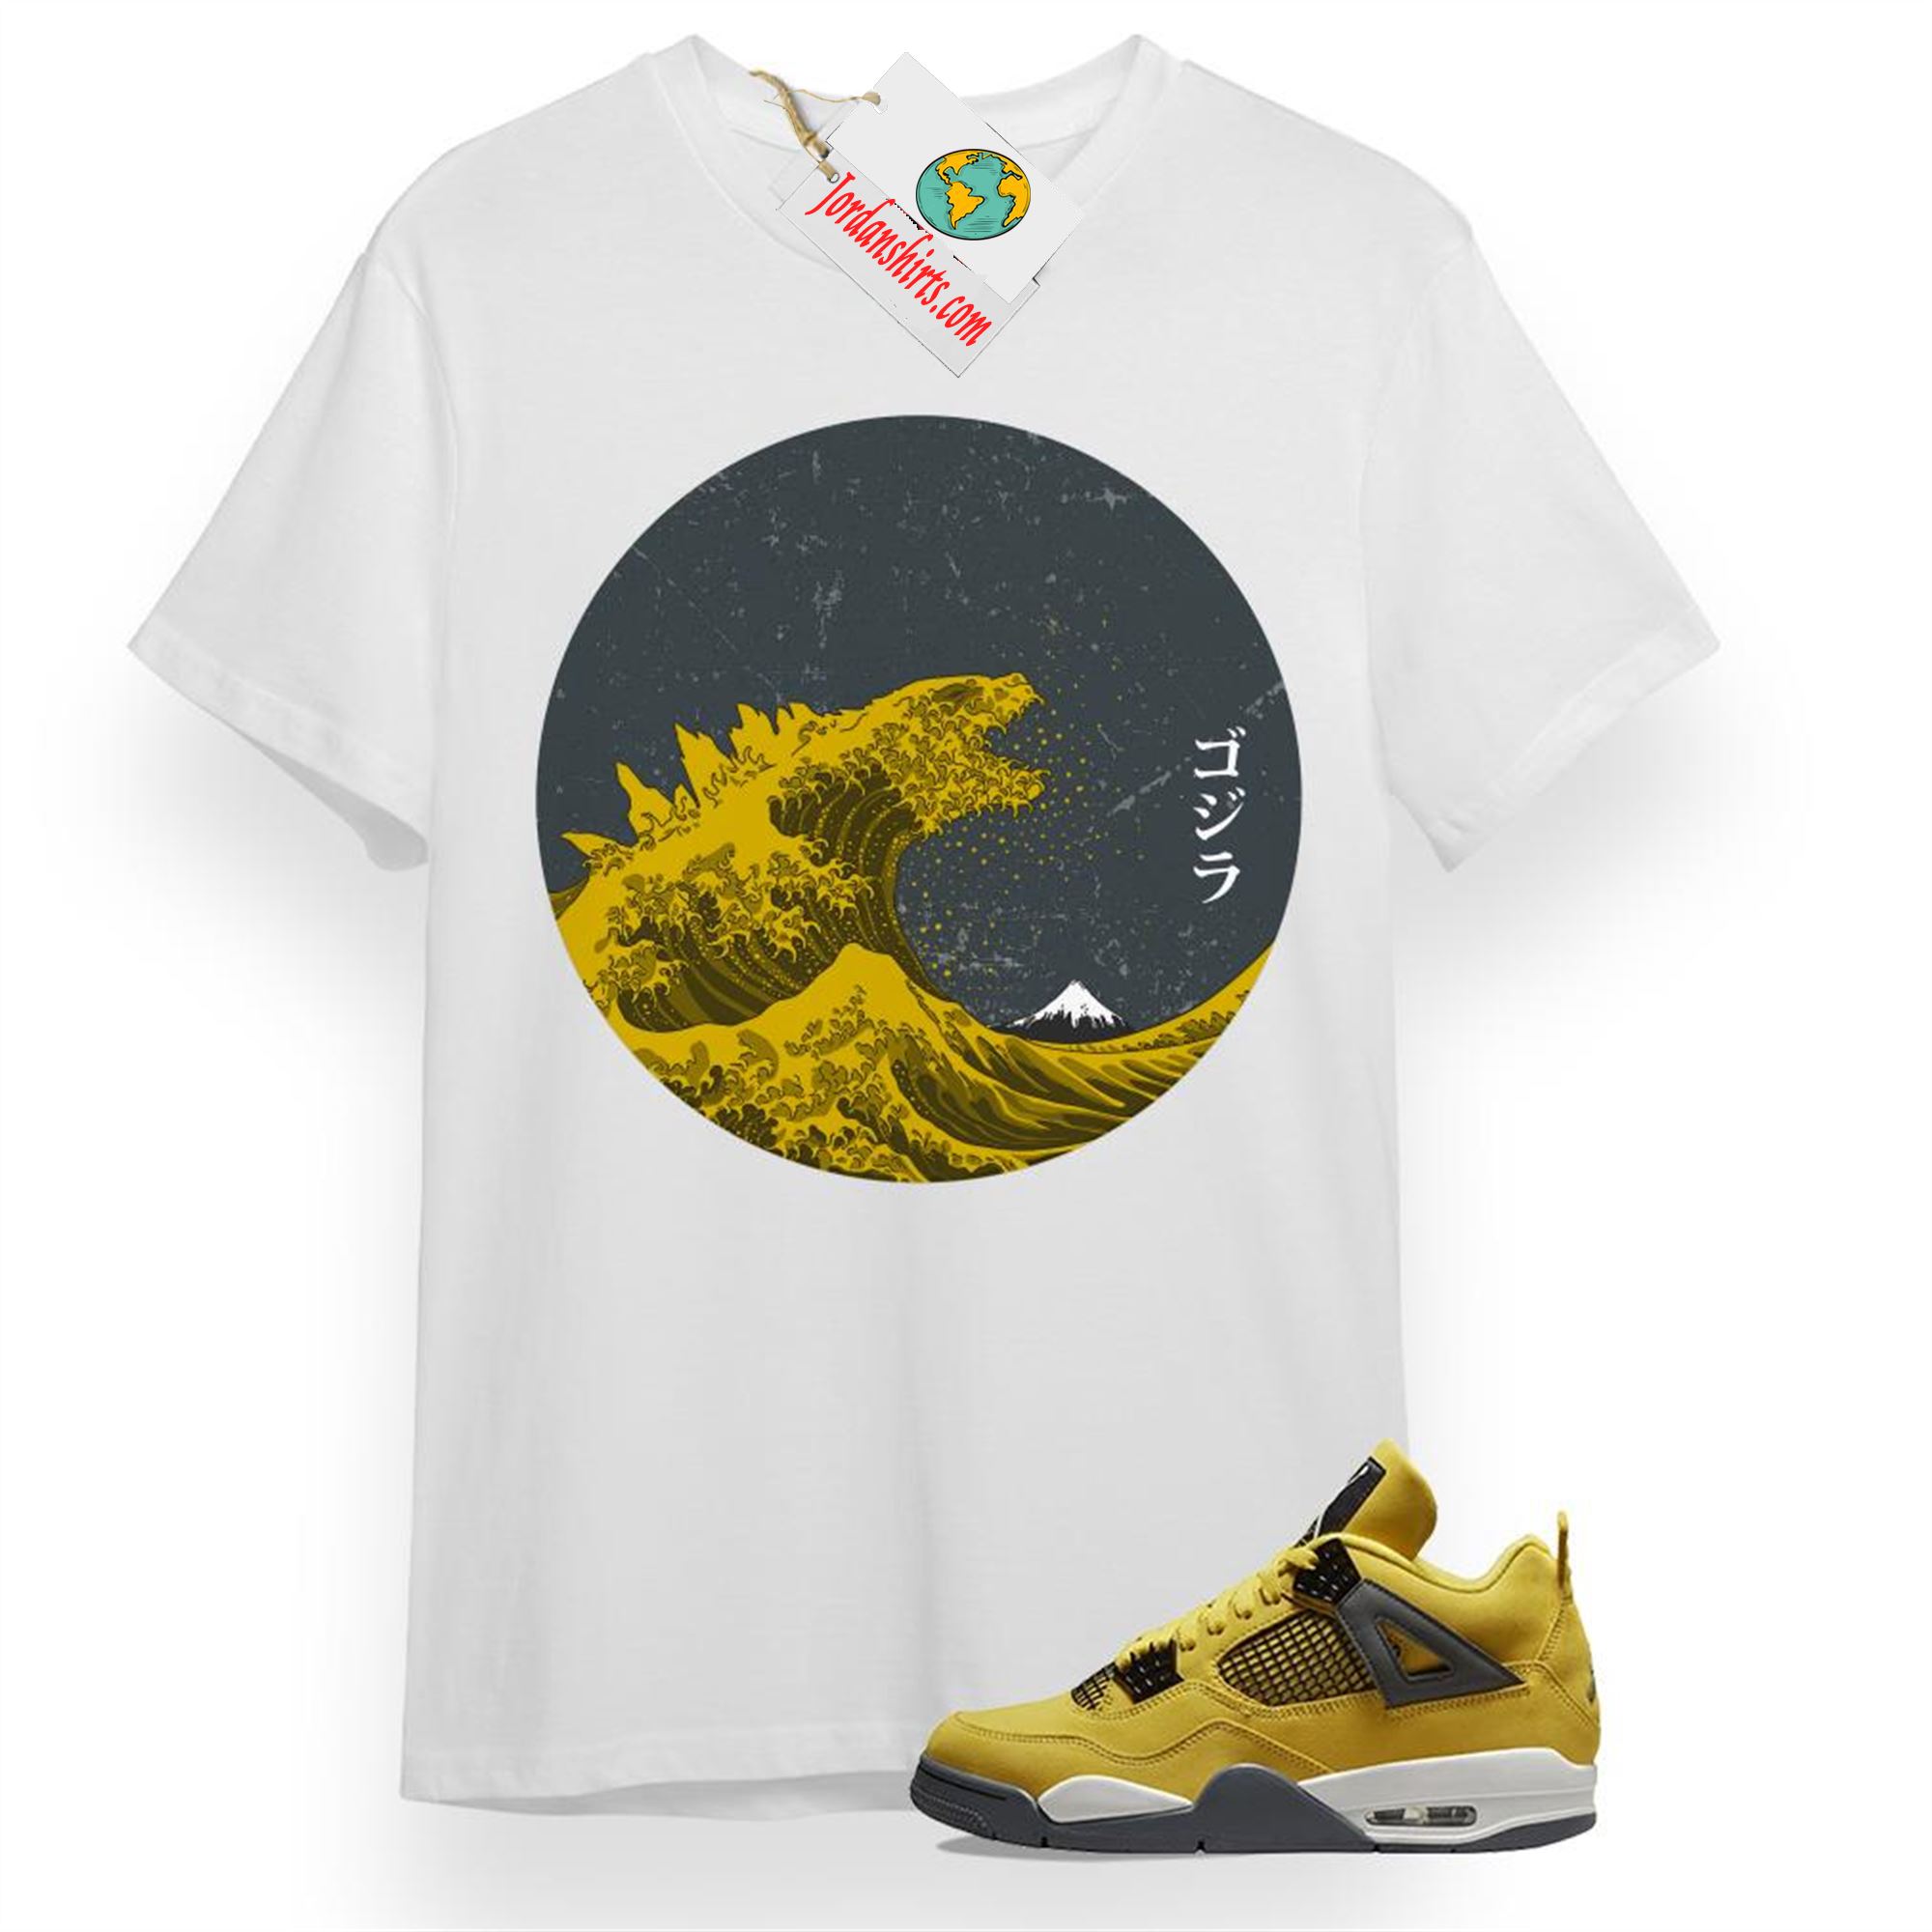 Jordan 4 Shirt, Godzilla White T-shirt Air Jordan 4 Retro Tour Yellowlightning 4s Full Size Up To 5xl